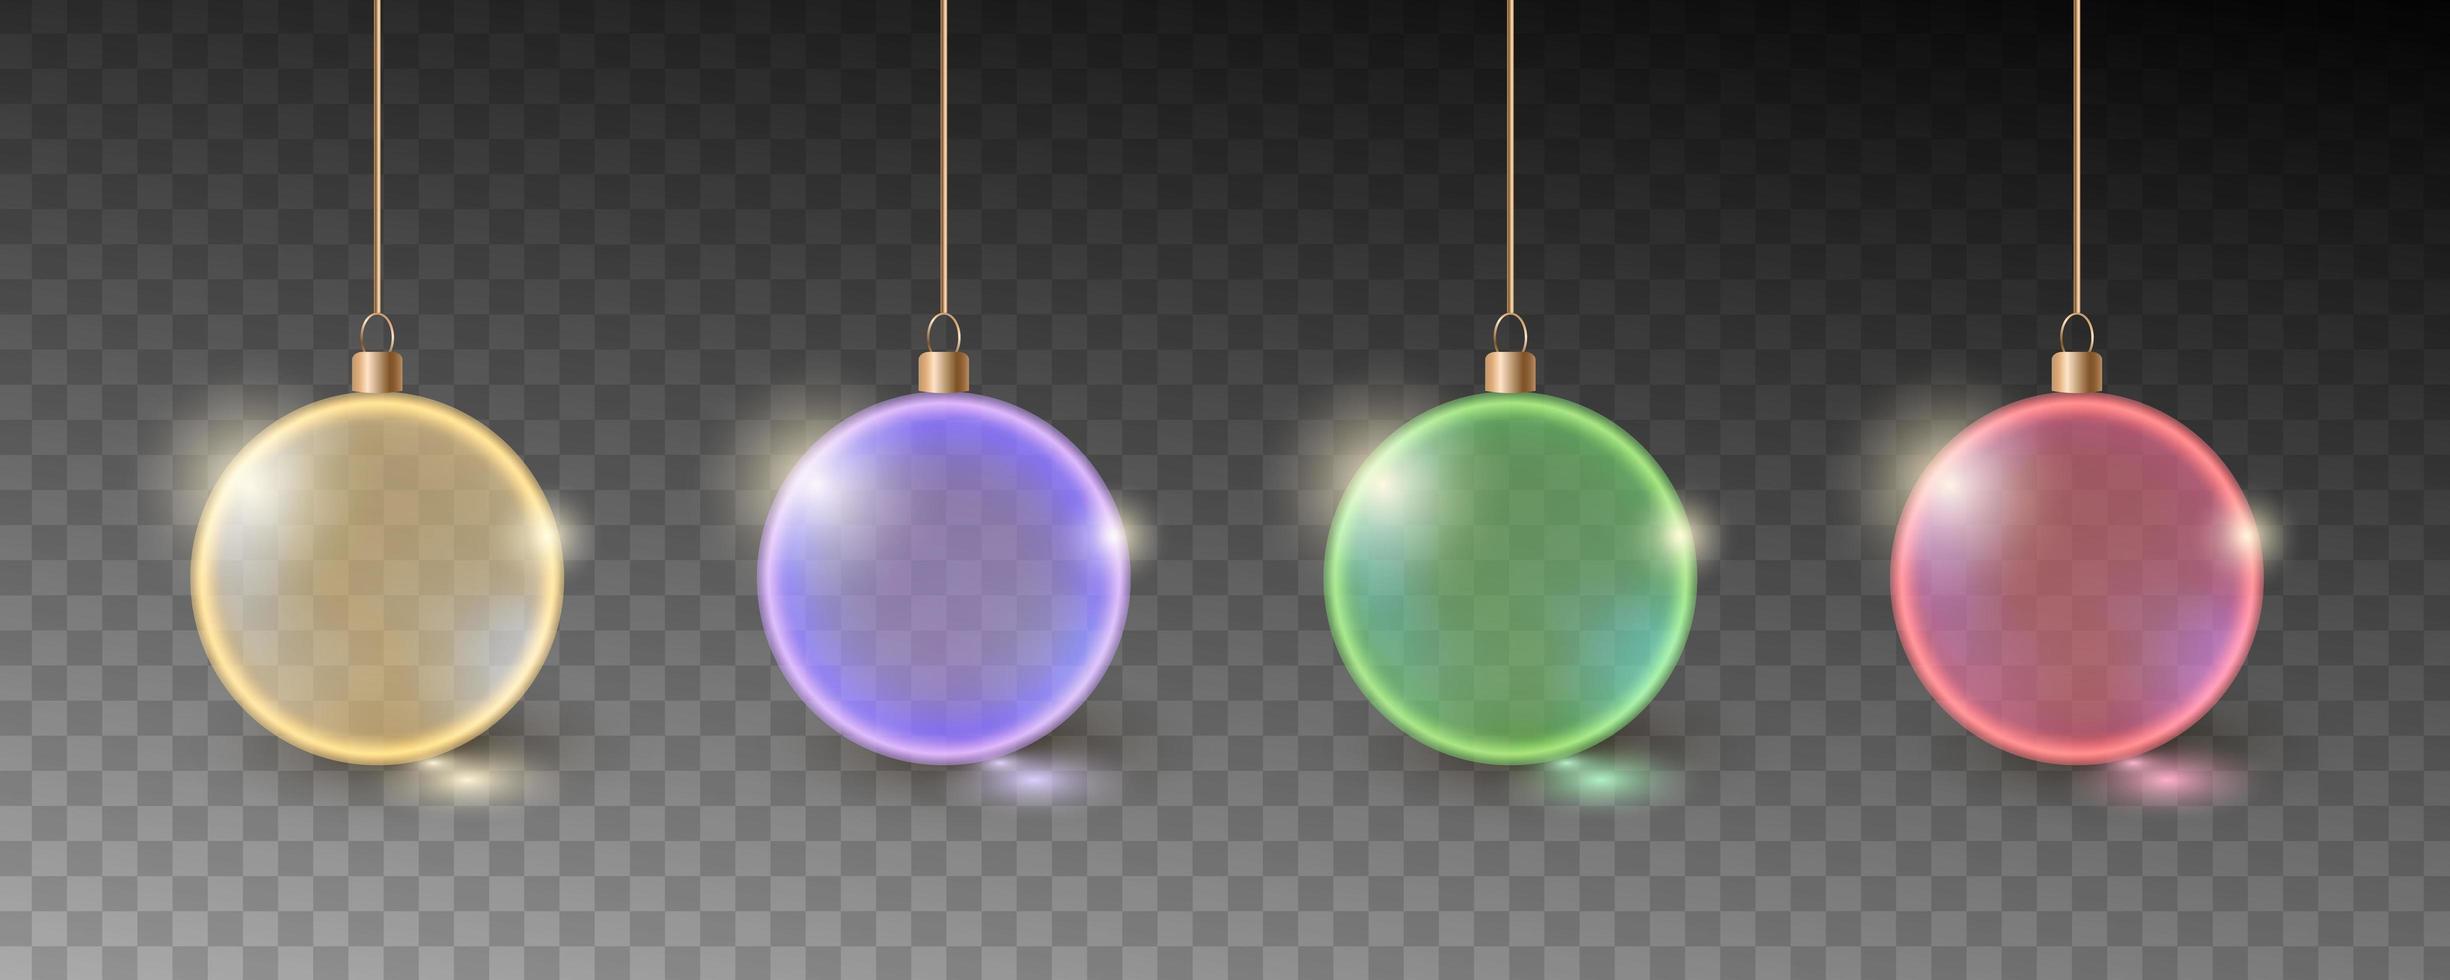 bolas de navidad de colores. conjunto de decoraciones realistas. vector